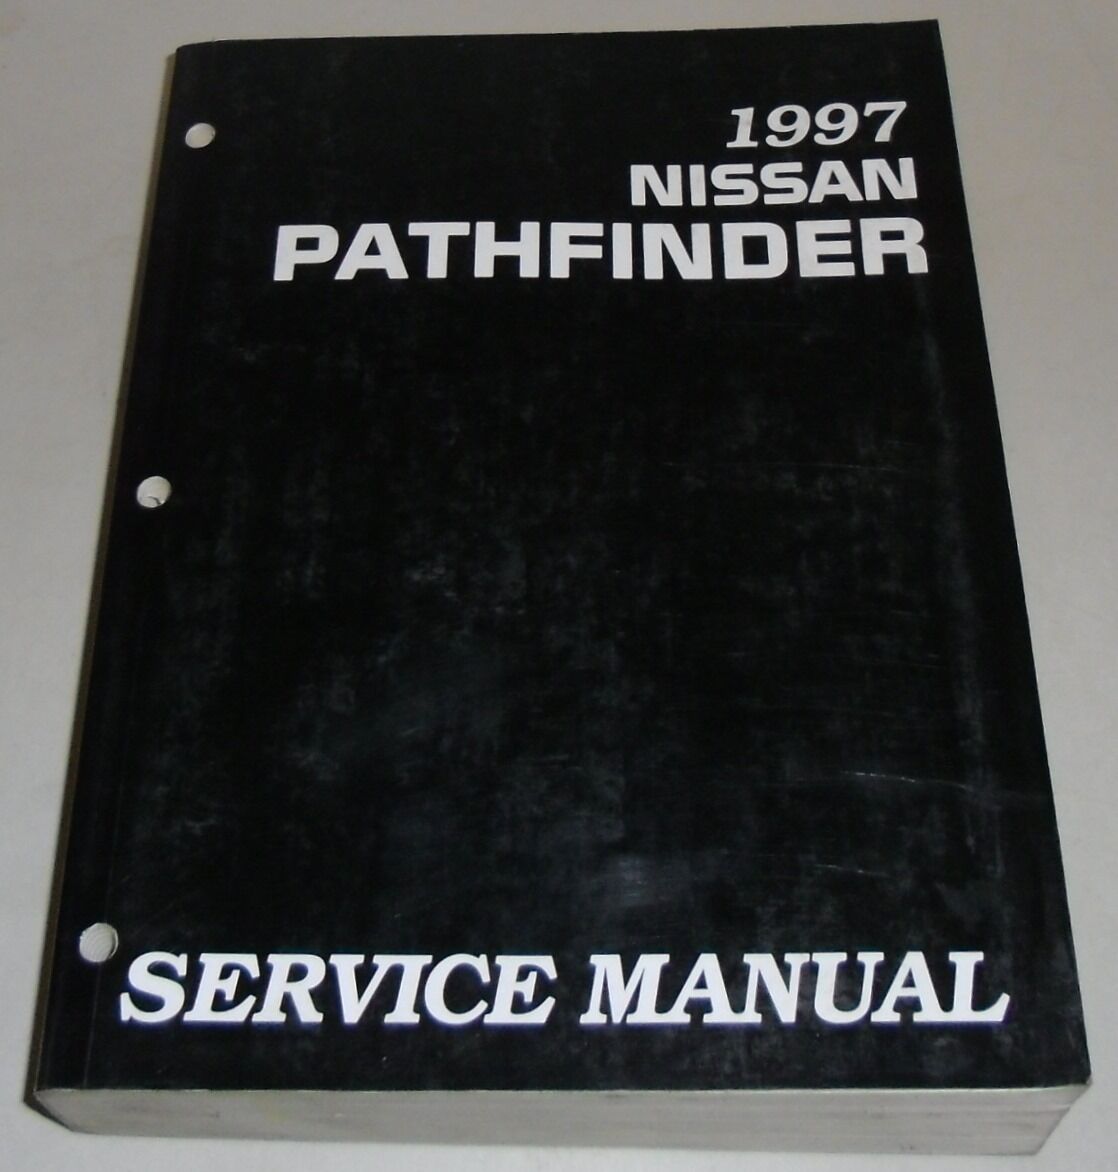 Instrukcja warsztatowa Nissan Pathfinder R50 1997 Ograniczona sprzedaż, oryginalna gwarancja